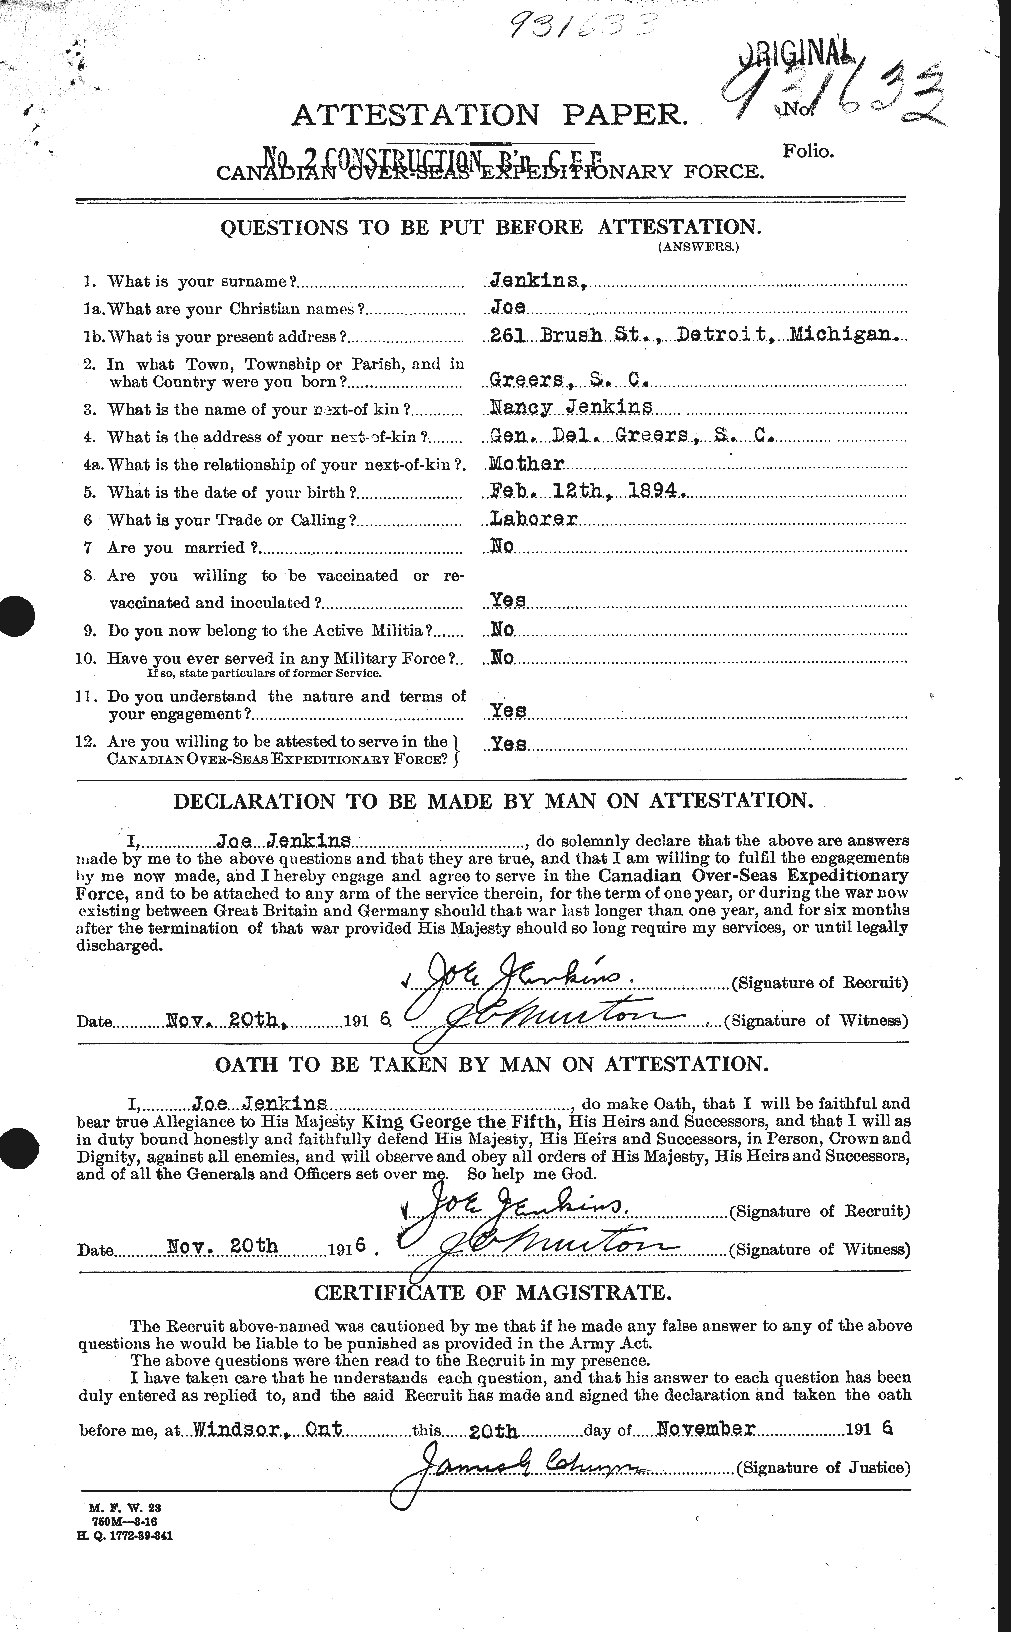 Dossiers du Personnel de la Première Guerre mondiale - CEC 416695a